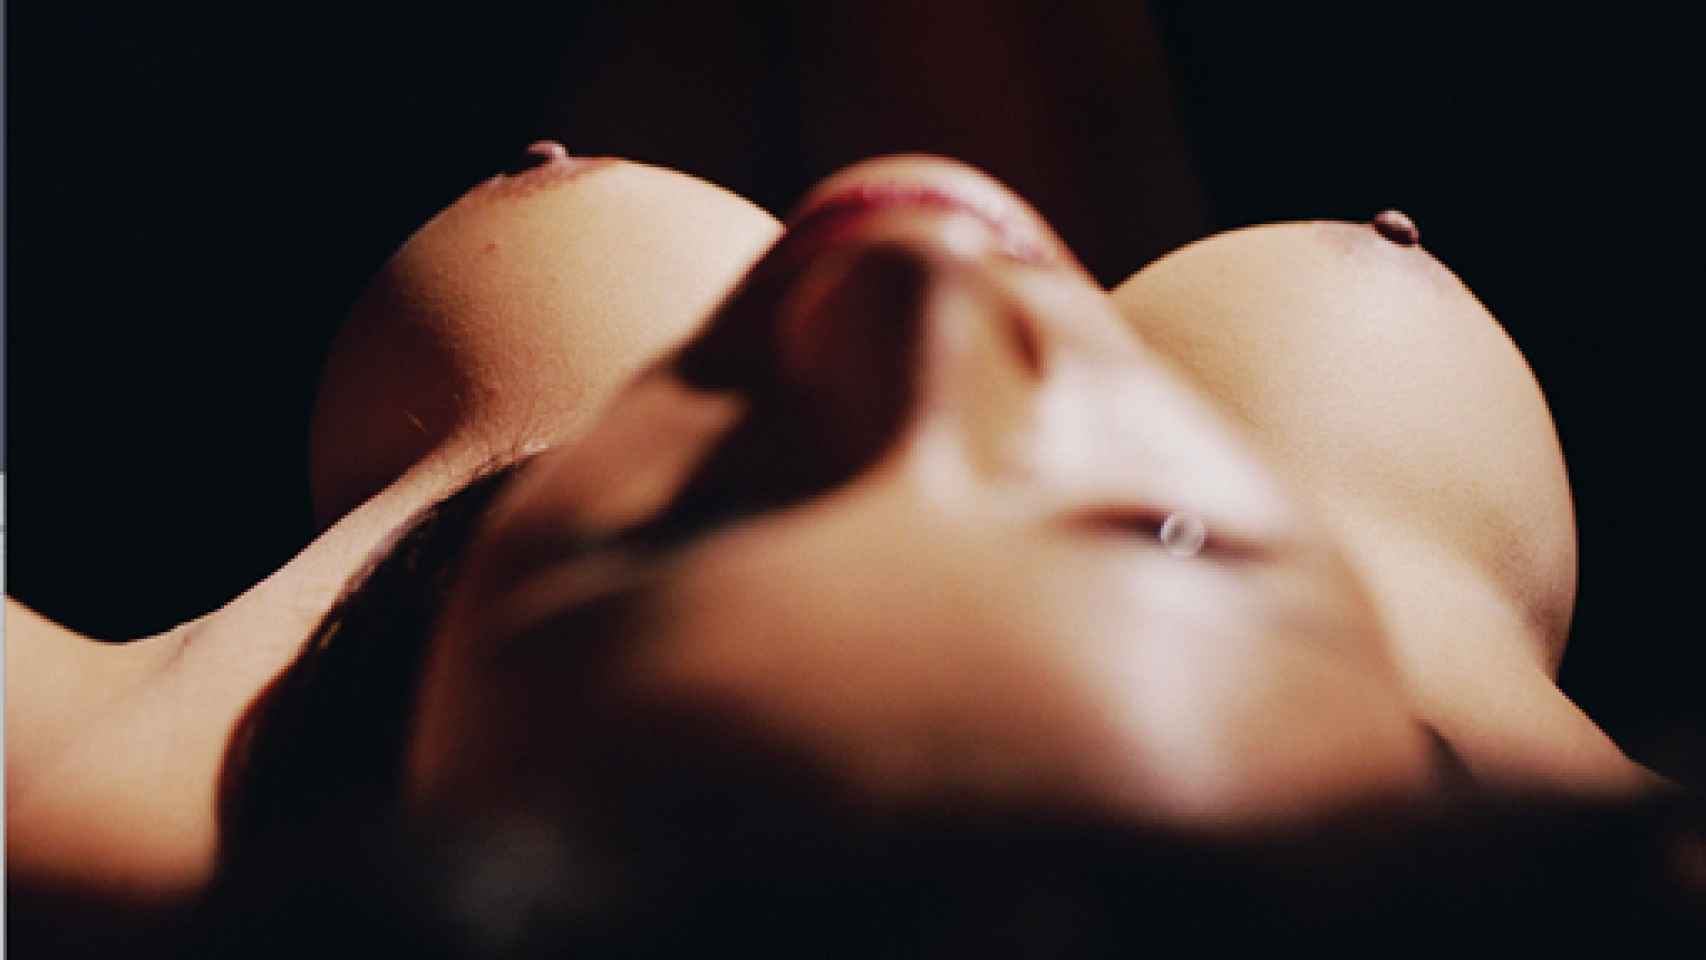 Image: Los desnudos de David Lynch, el fotógrafo tras el cineasta